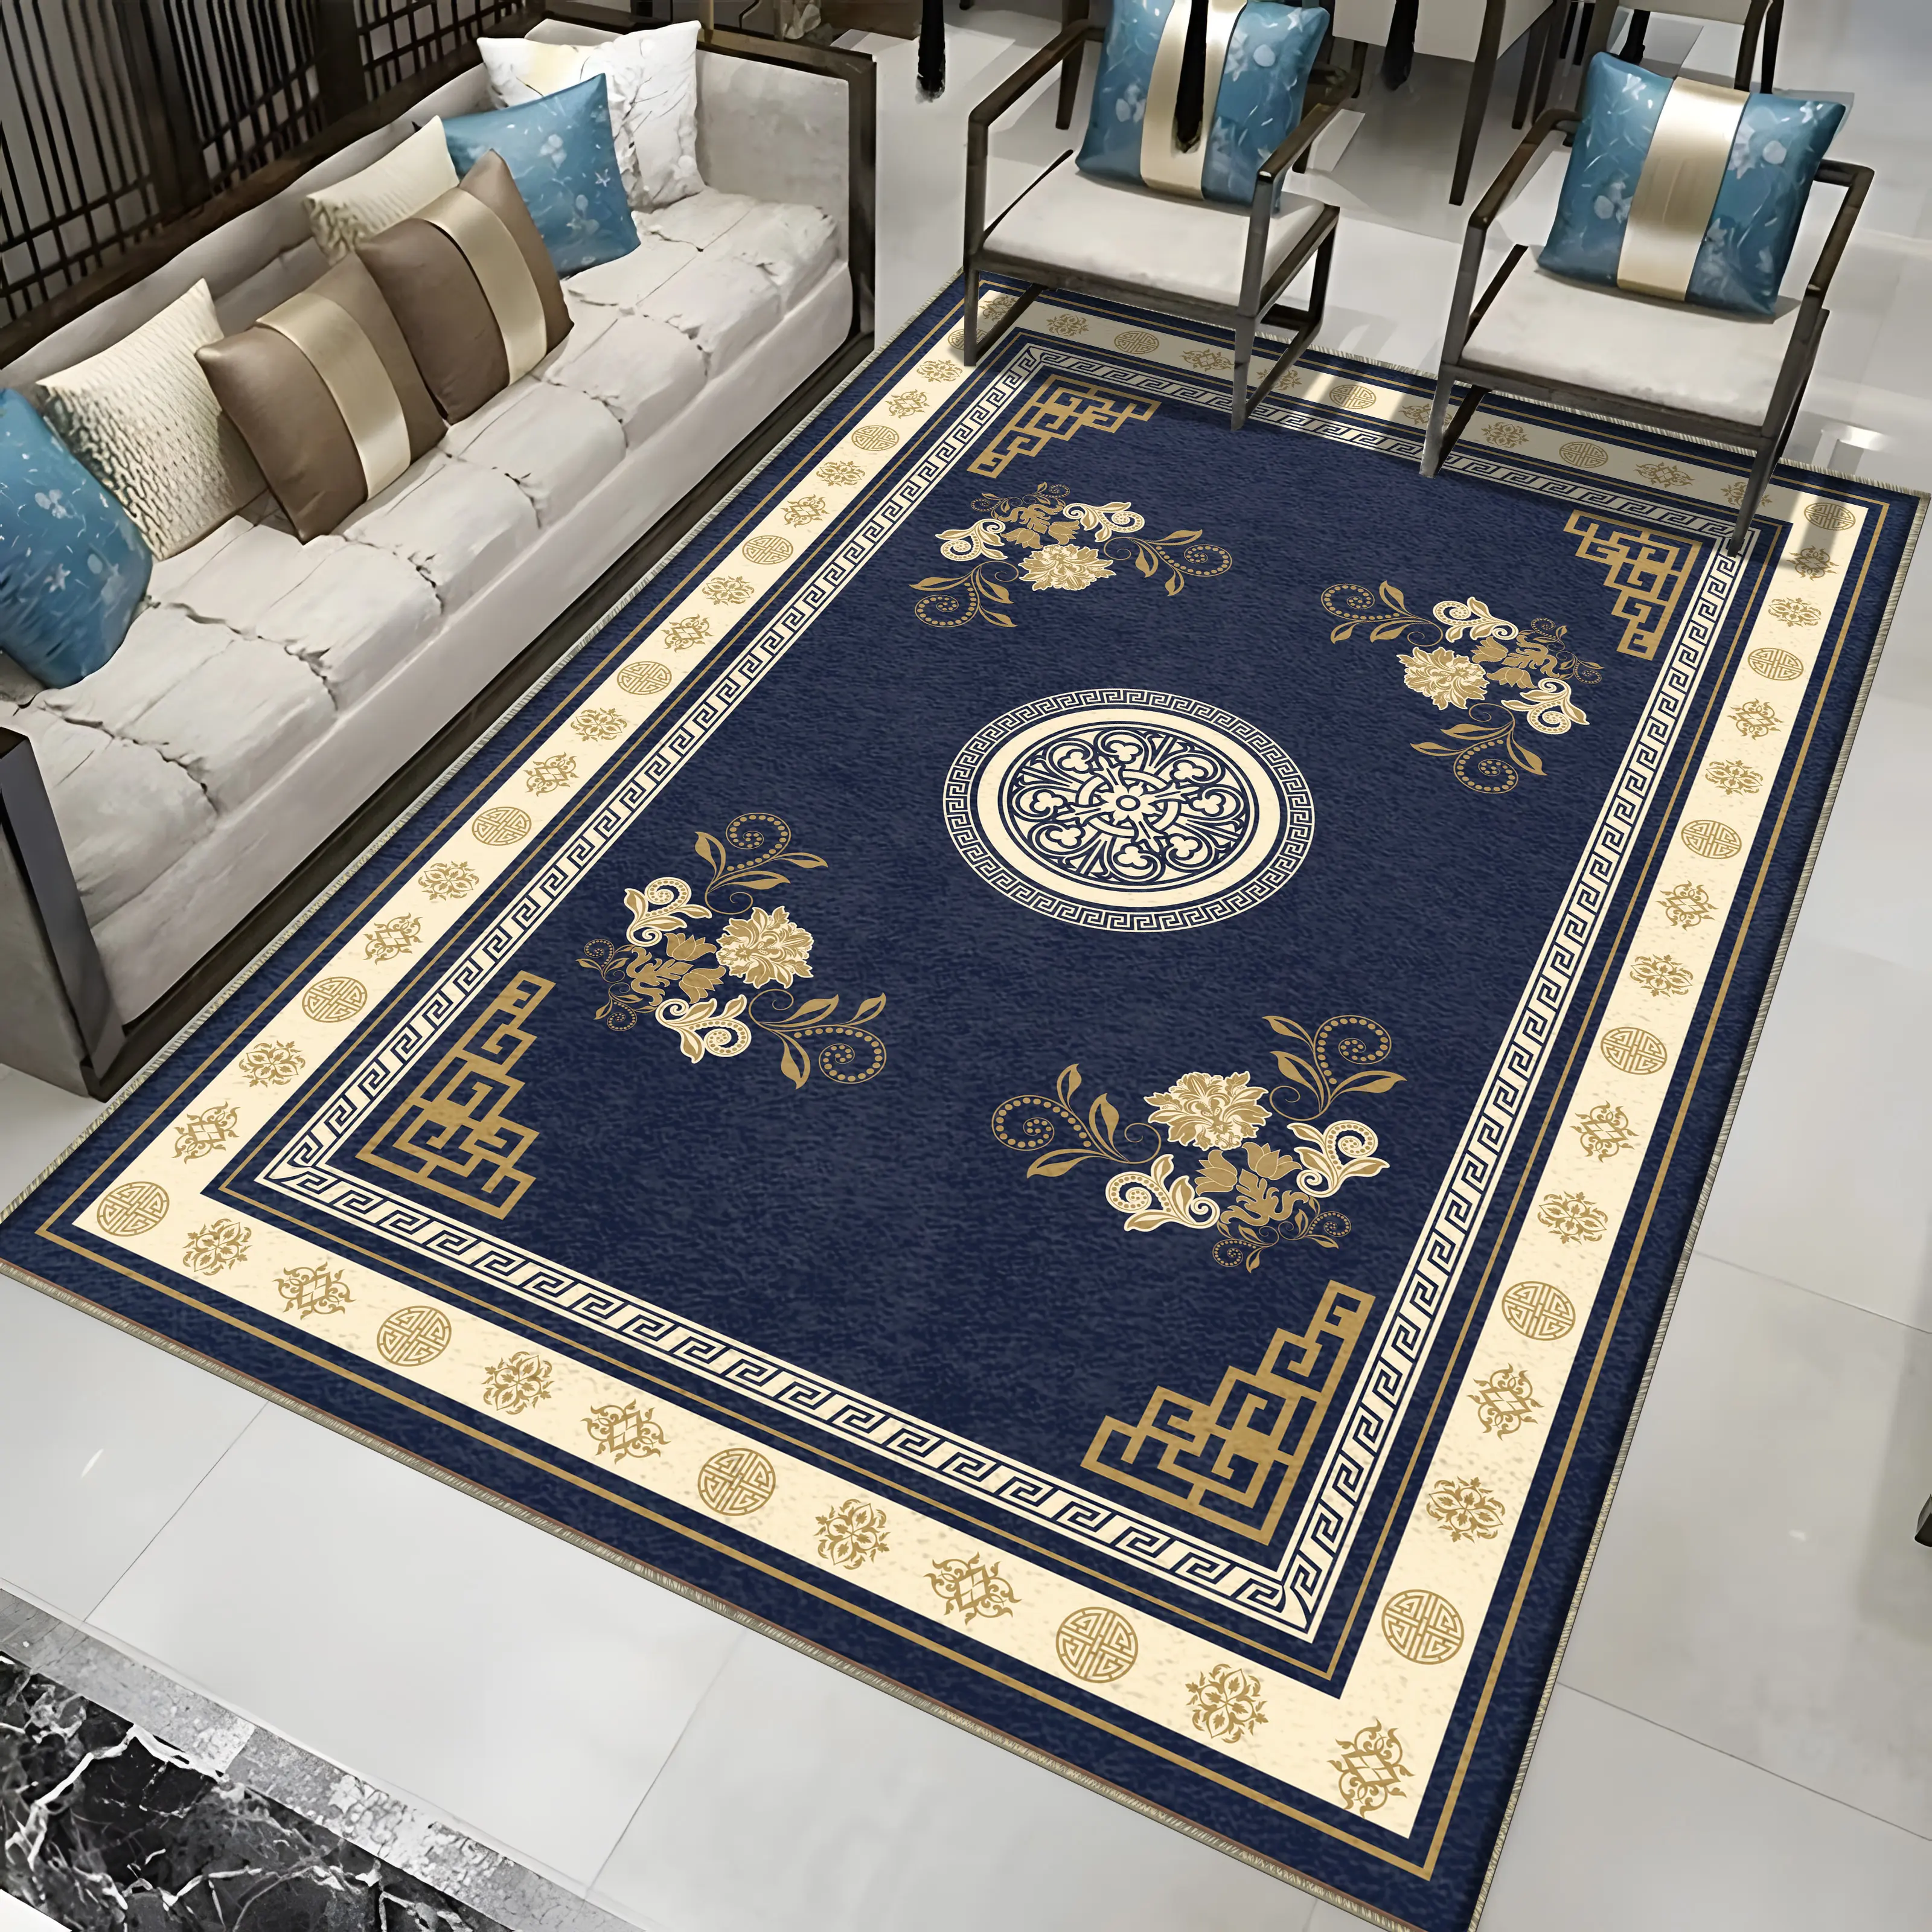 Karpet beludru kristal desain kustom Modern Persia pencetak Digital antiselip karpet dan karpet area besar ruang tamu